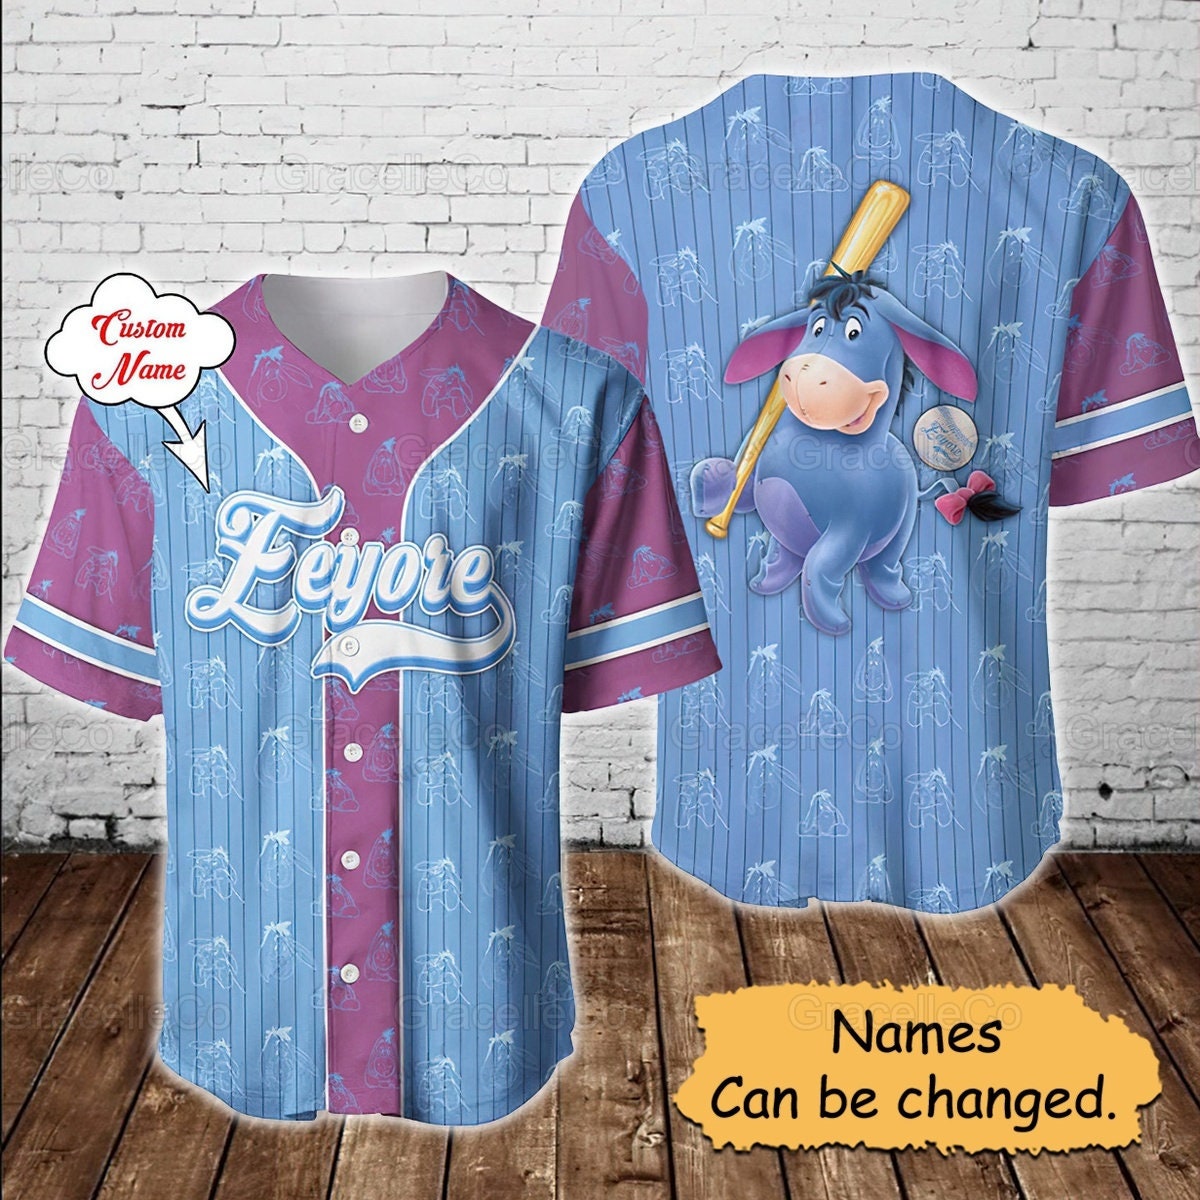 Minnesota Twins MLB Personalized Name Number Baseball Jersey Shirt